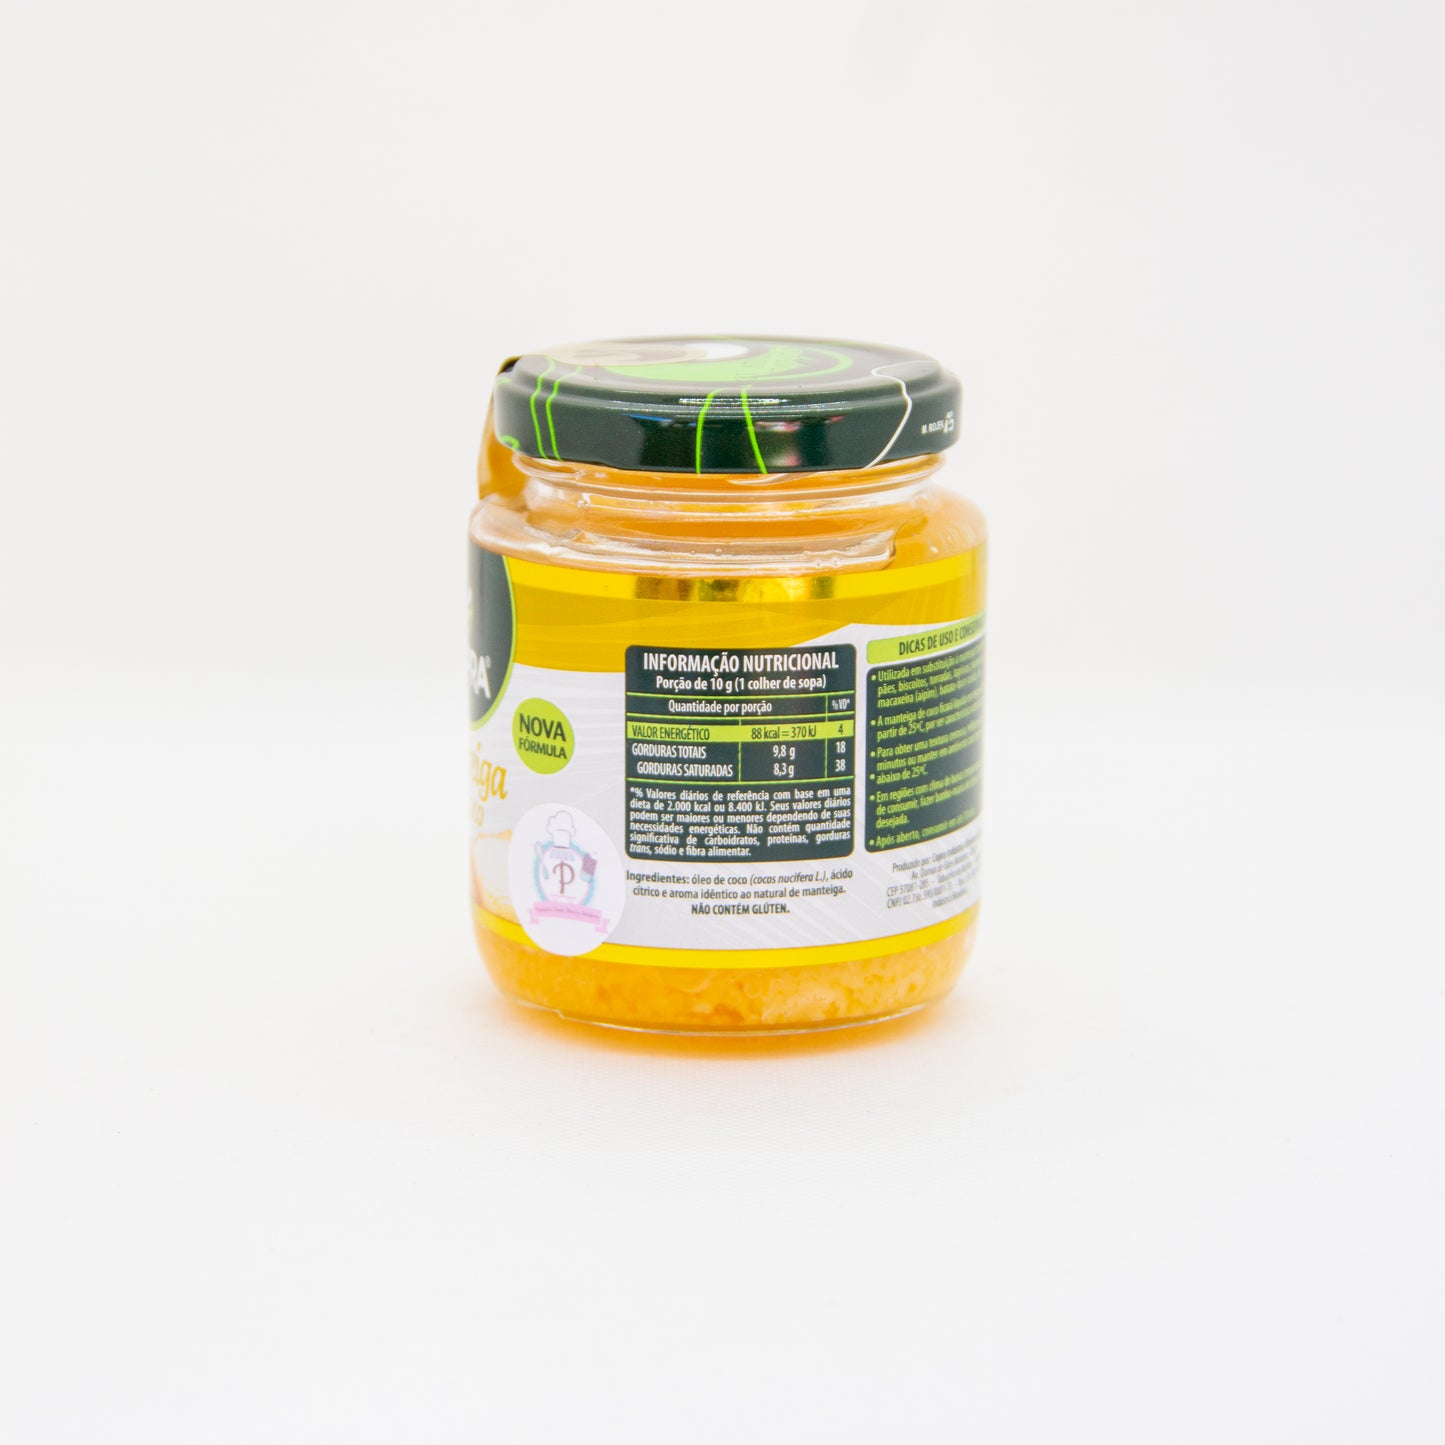 Mantequilla de coco orgánica "Copra" - 200gr